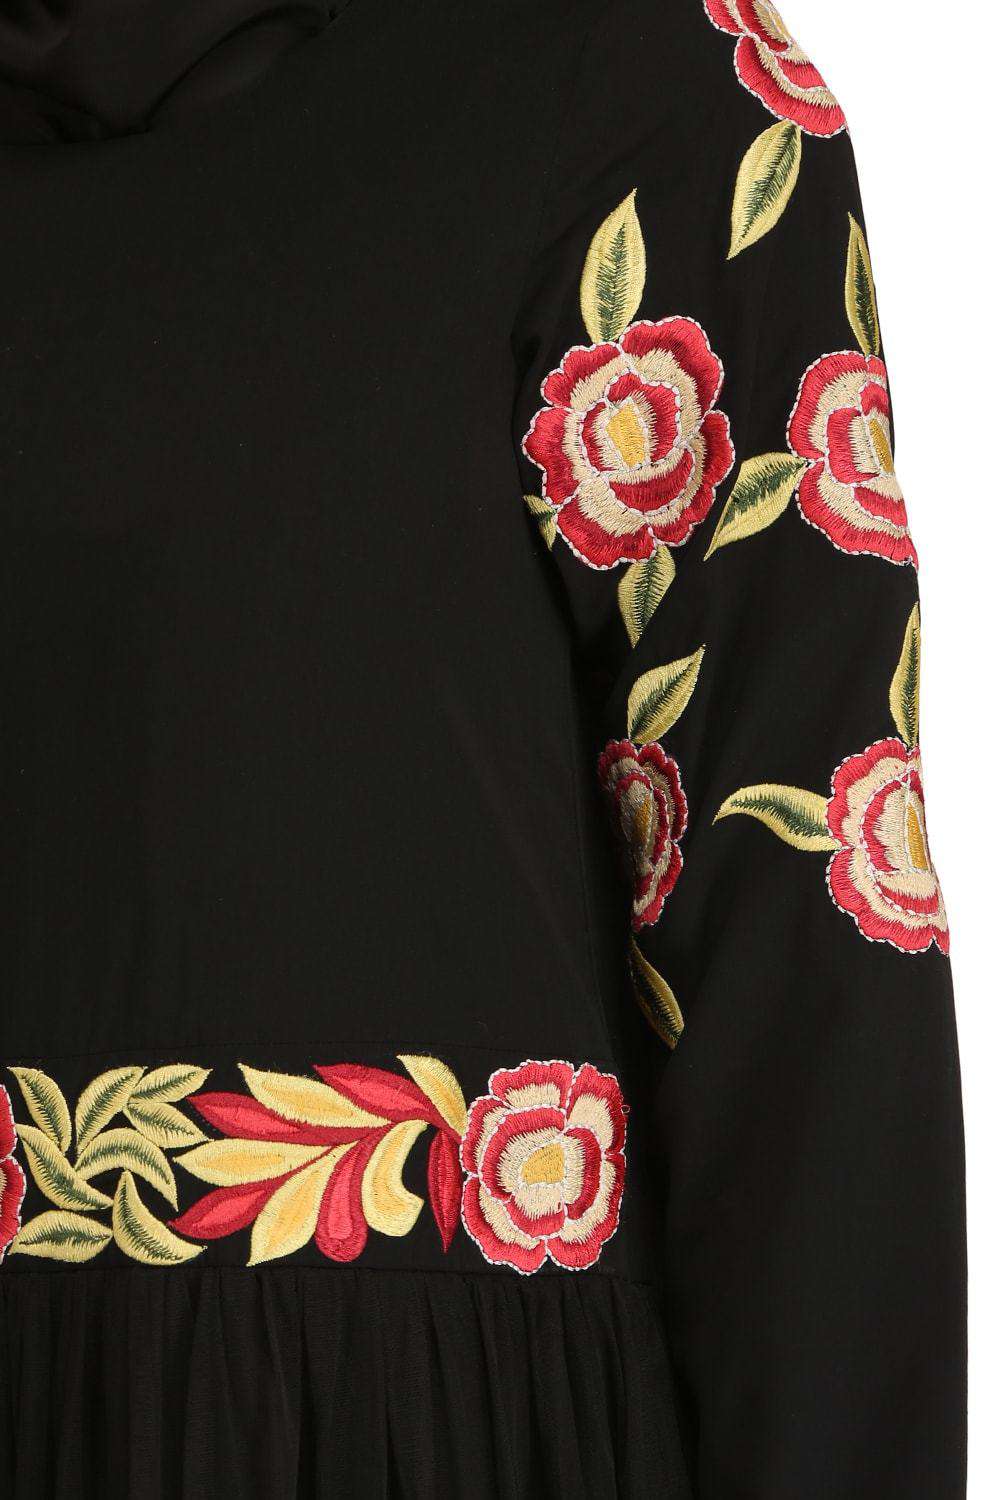 Mumina Black Nida & Net Abaya Embroidery